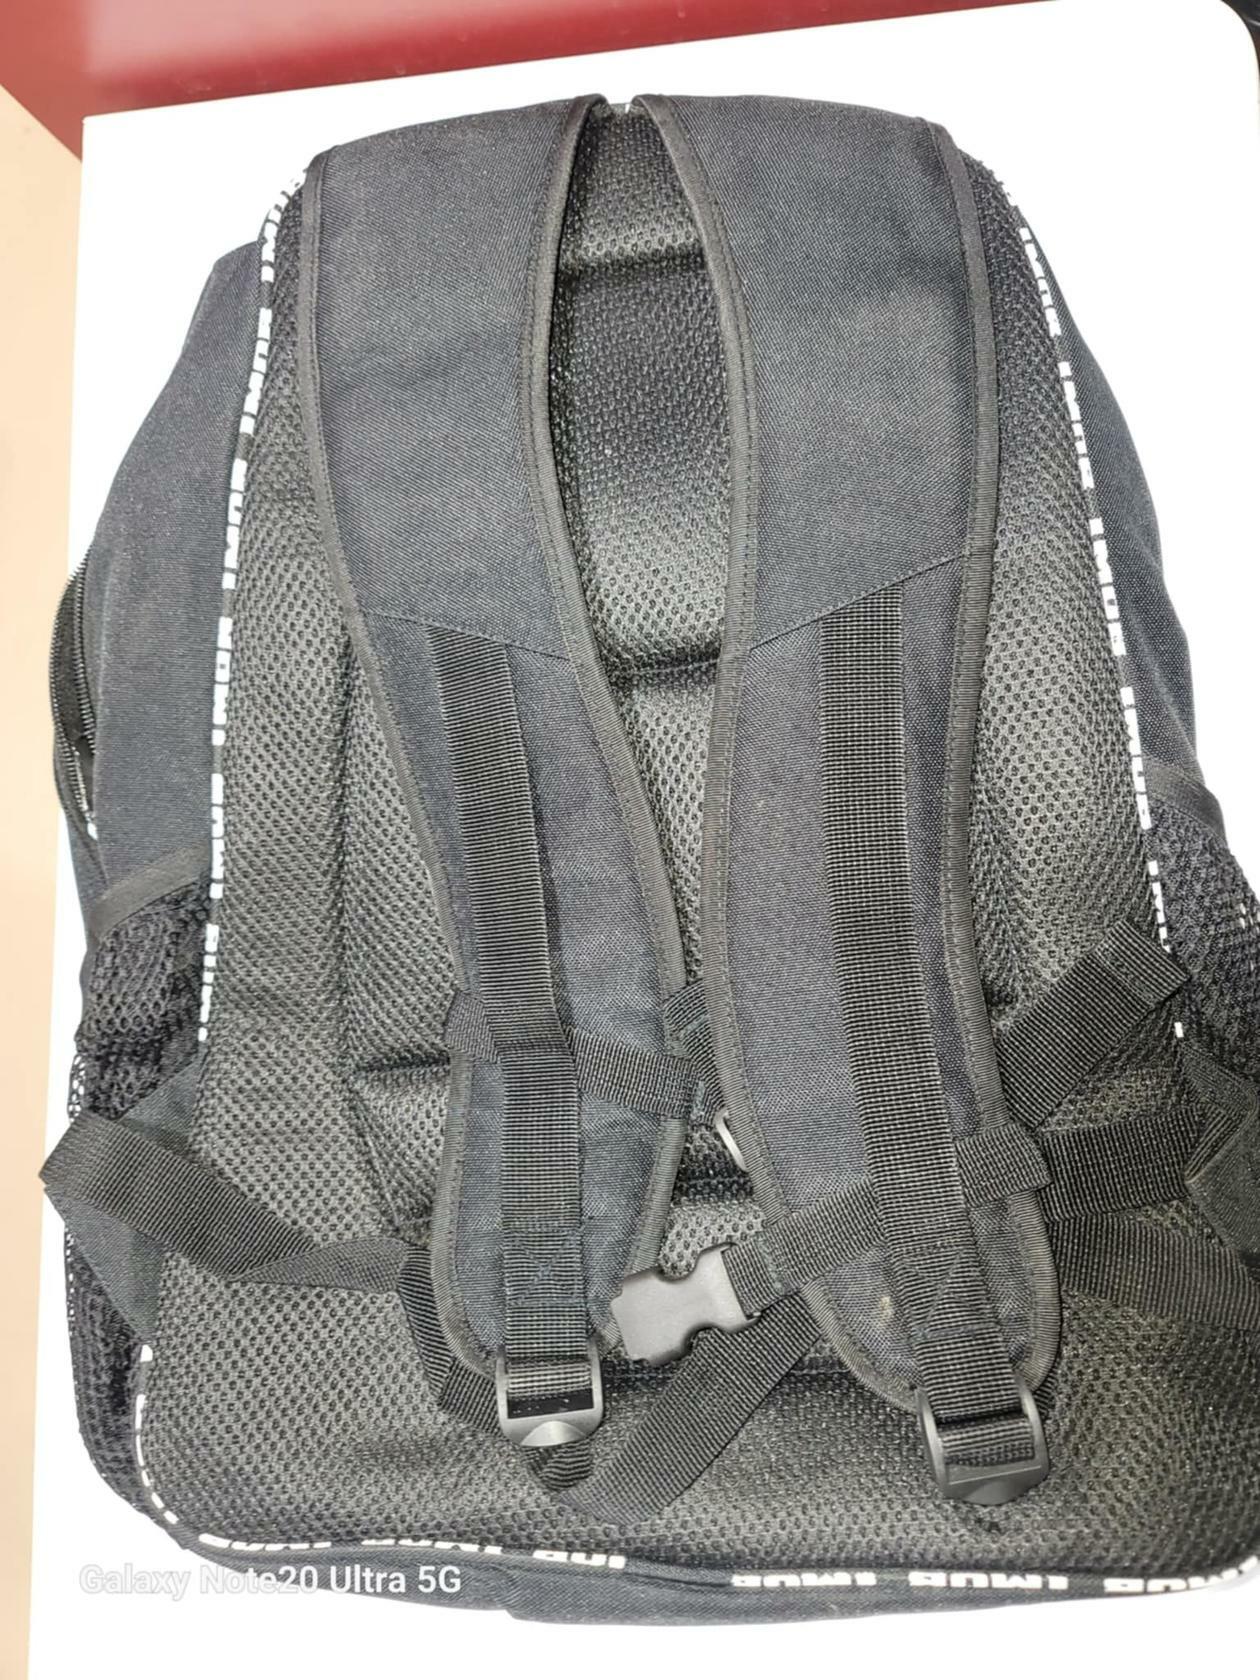 GiT Sports Backpack / Bookbag - Black